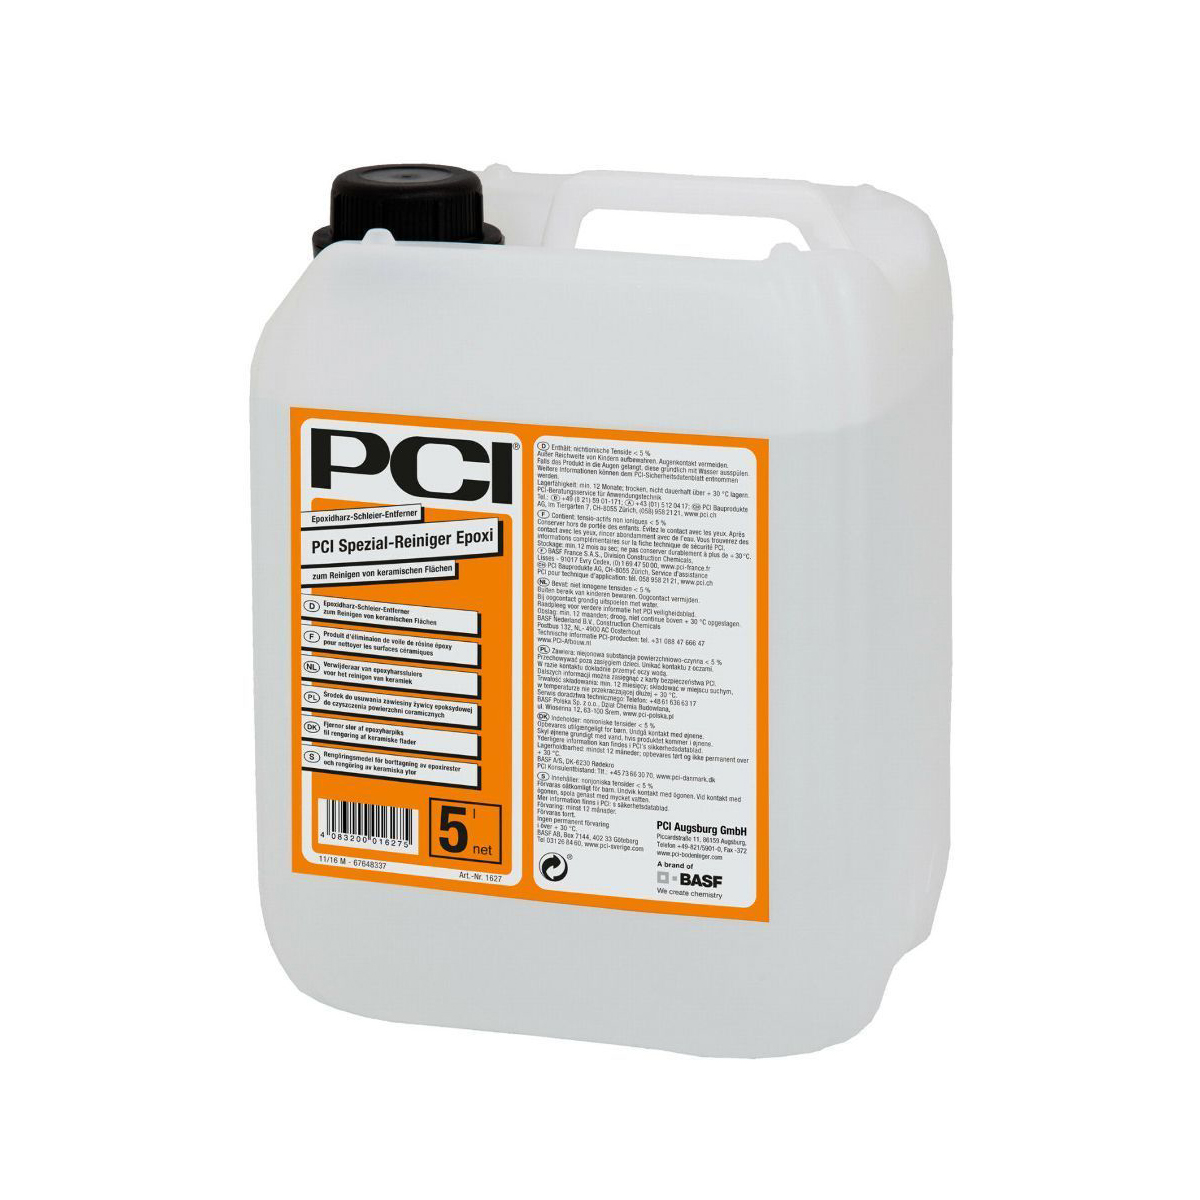 PCI Spezial-Reiniger Epoxi Limpieza de manchas de resina epoxi en superficies cerámicas